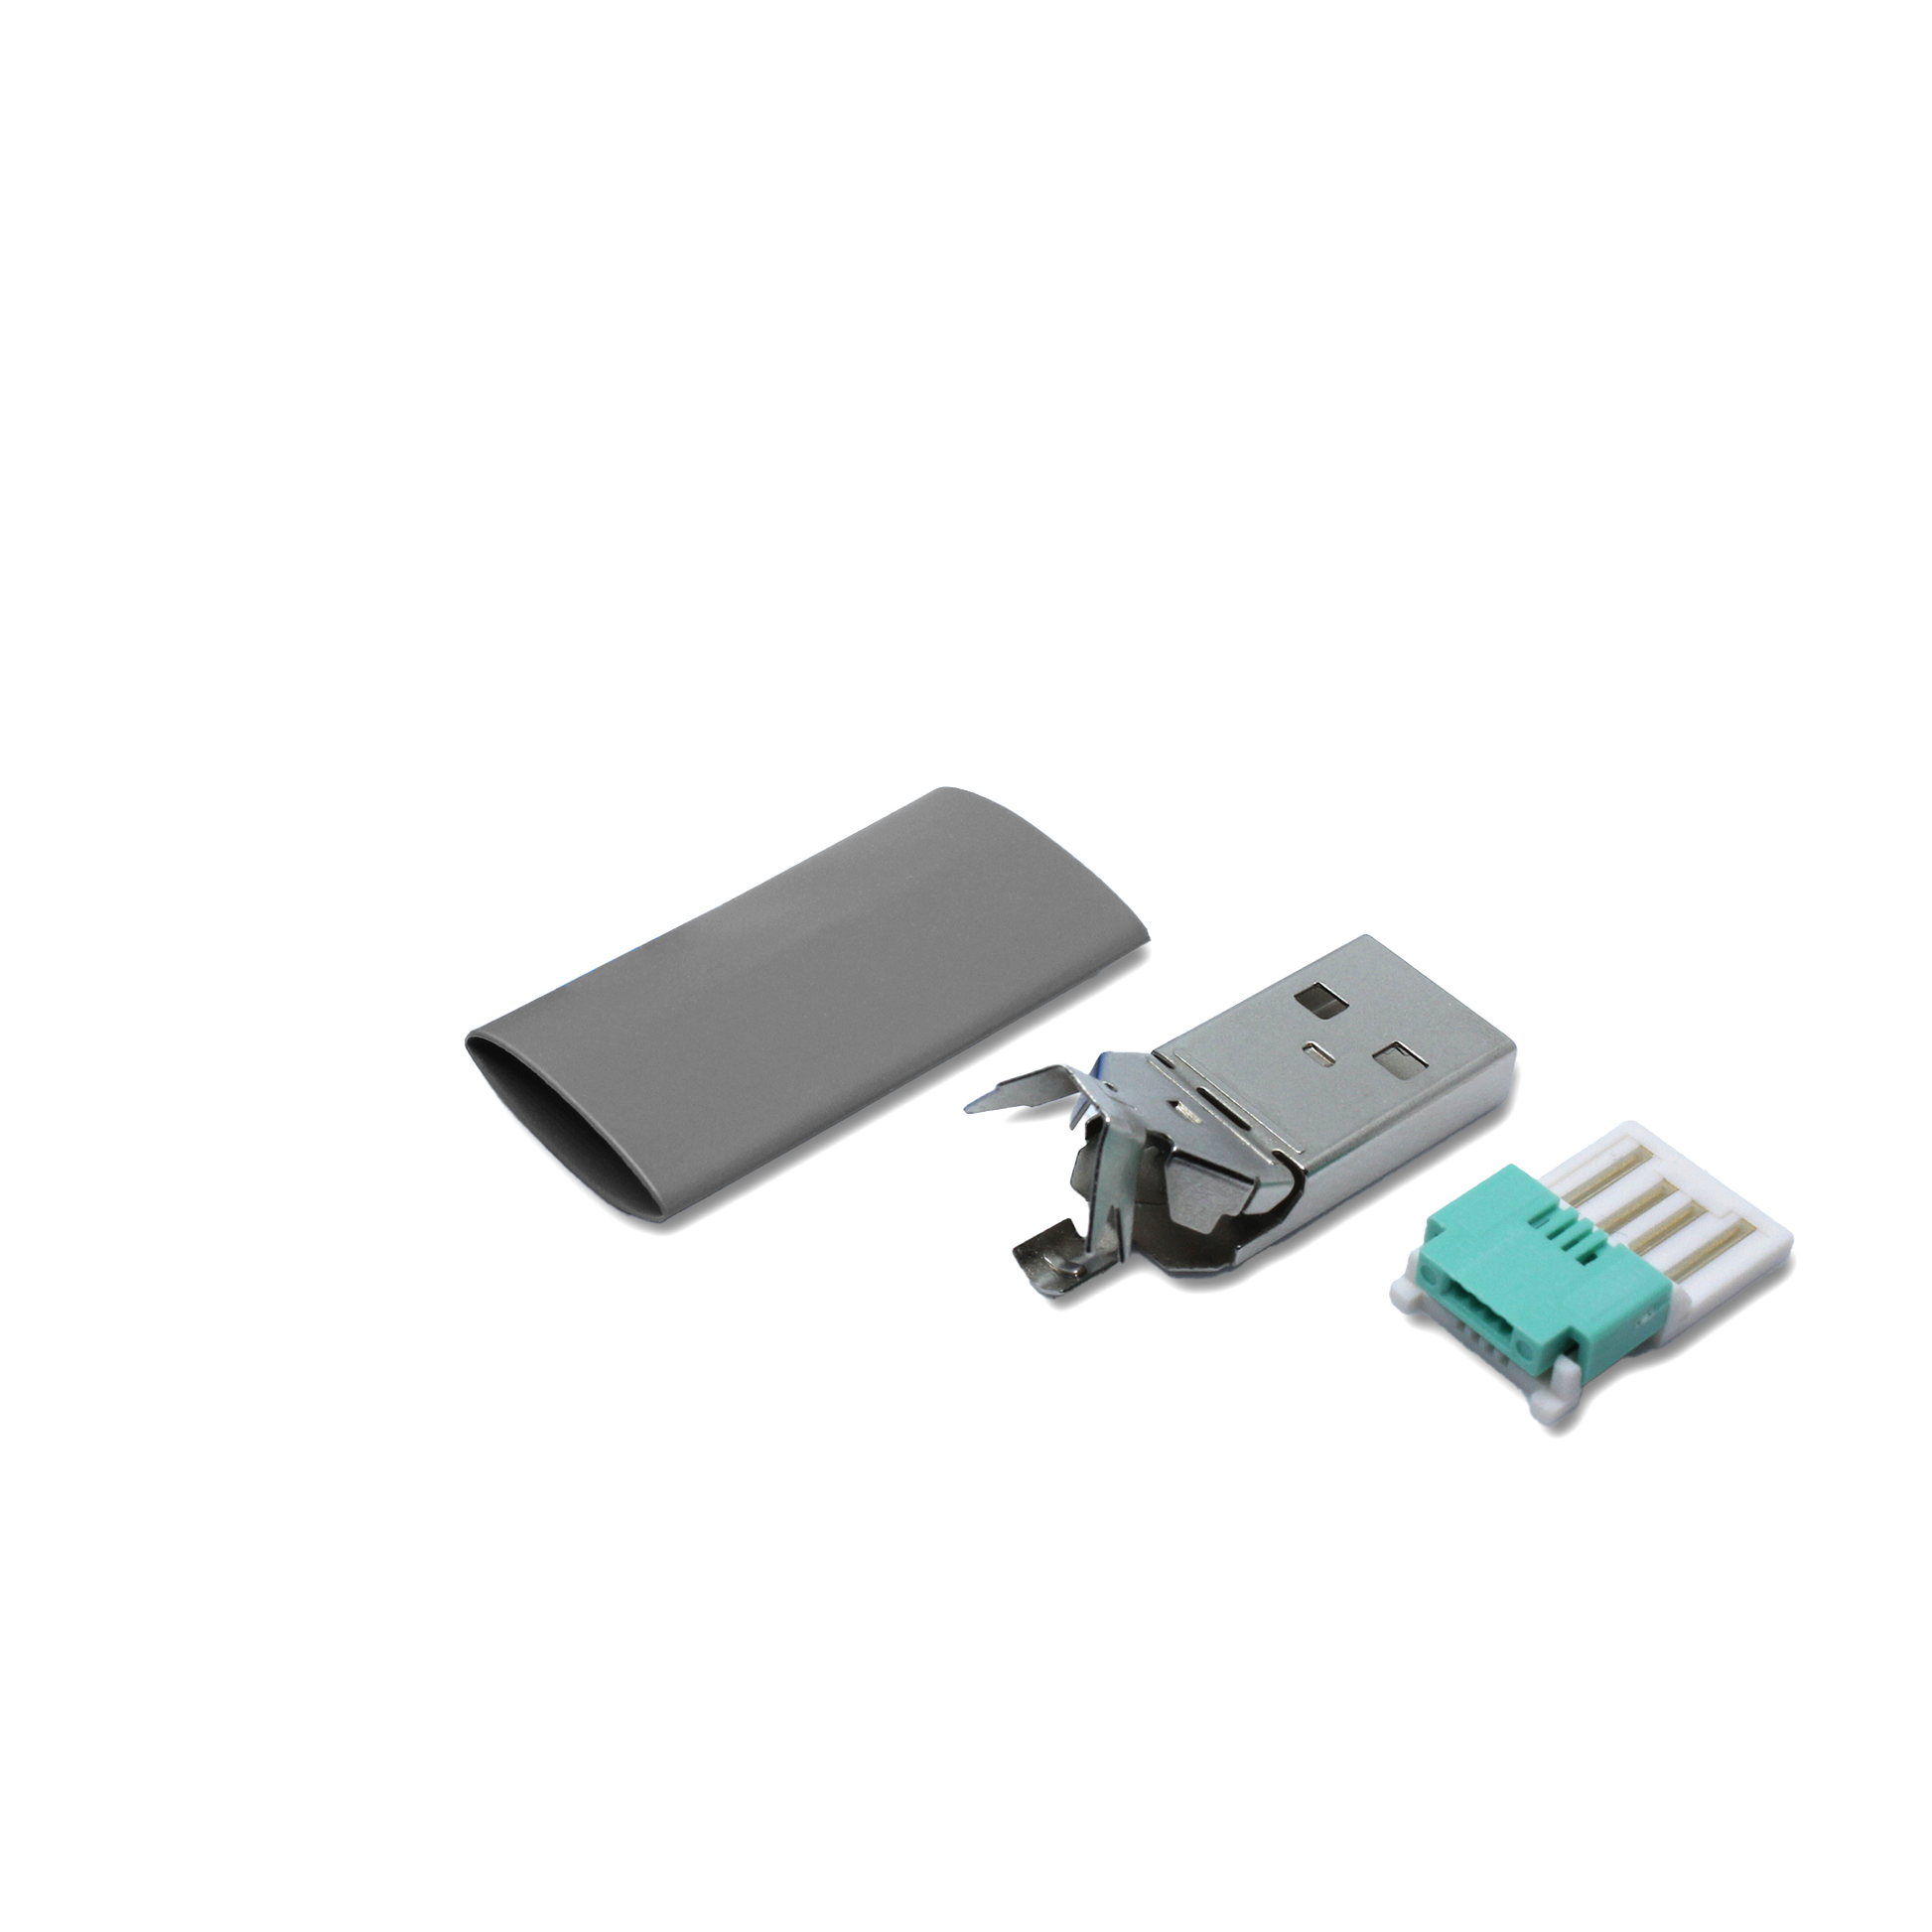 Einzelteile USB A Stecker in grau, mit dem Ersatzteil kann ein USB 2.0 Kabel lötfrei (crimpen) repariert werden